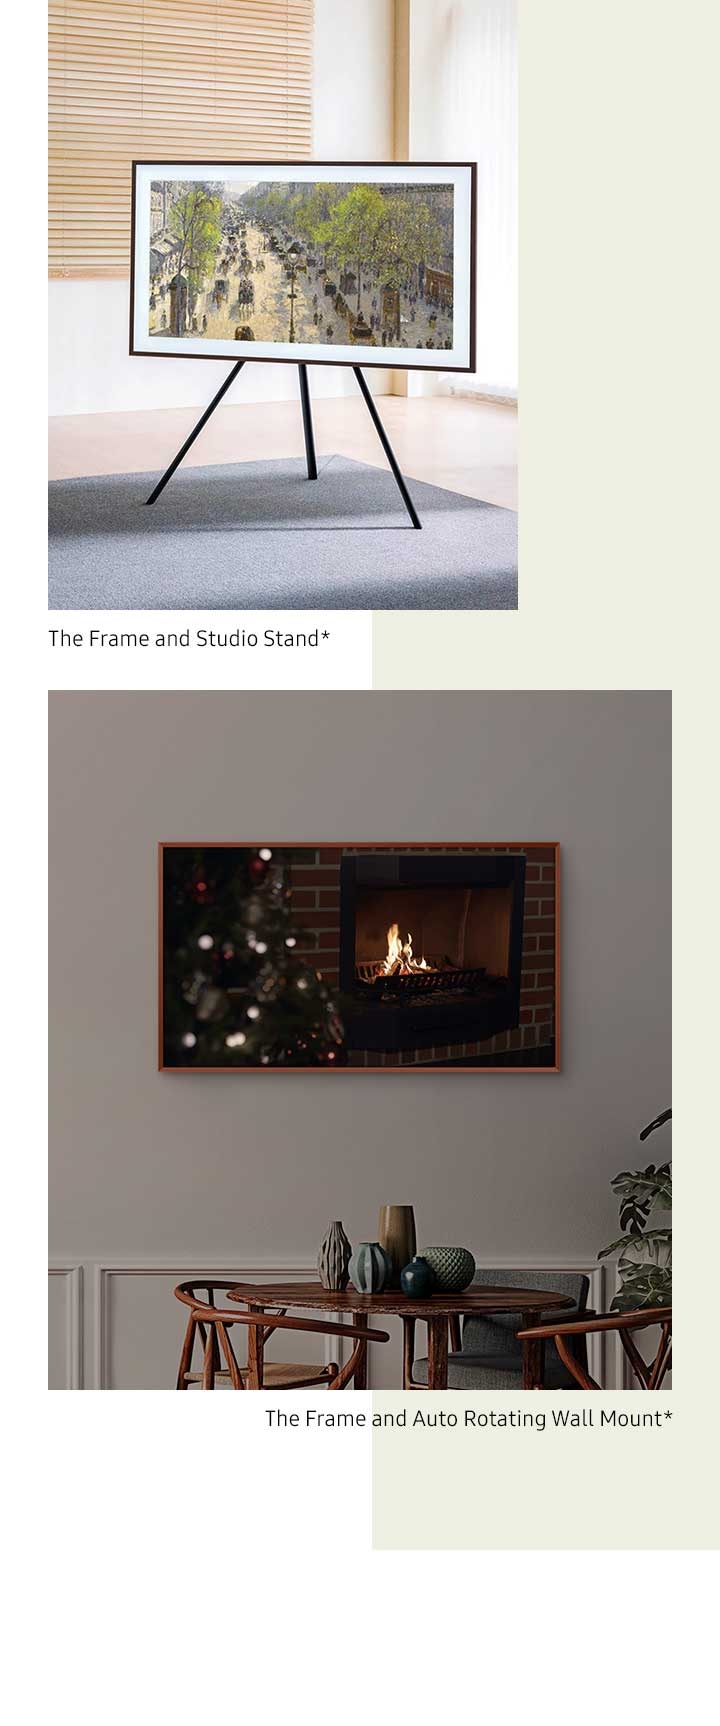 Automatiškai besisukantis sieninis laikiklis „The Frame“ leidžia pasukti tarp vertikalios ir horizontalios padėčių*. „The Frame“ tvirtinamas ant „Studio“ stovo*.